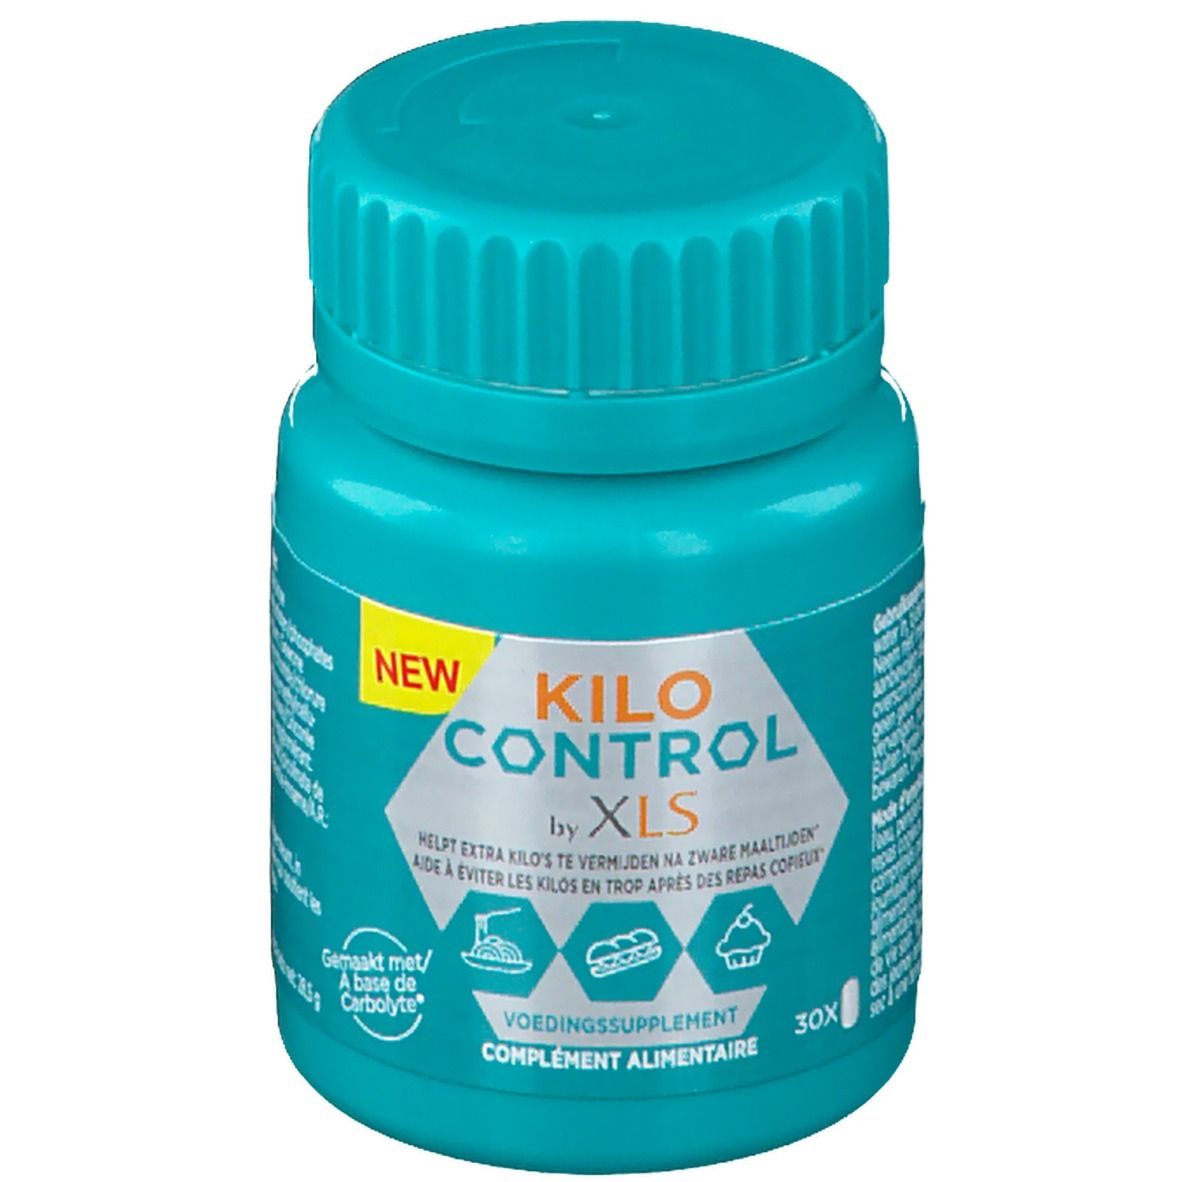 XL-S Kilo Control